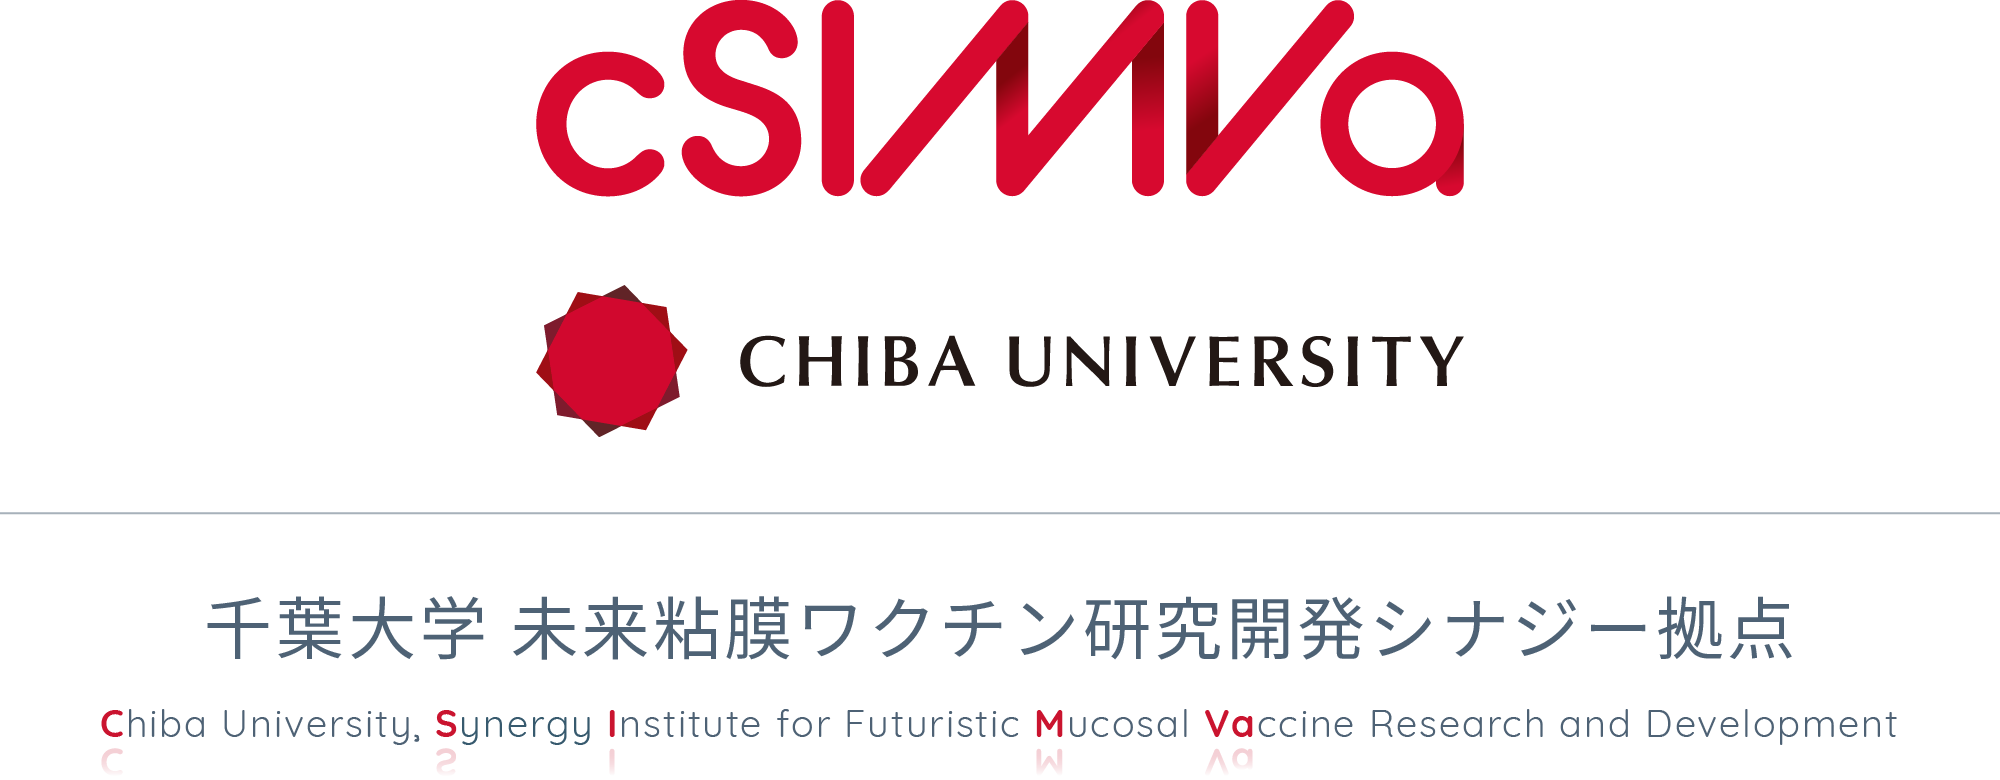 千葉大学 未来粘膜ワクチン研究開発シナジー拠点（cSIMVa）